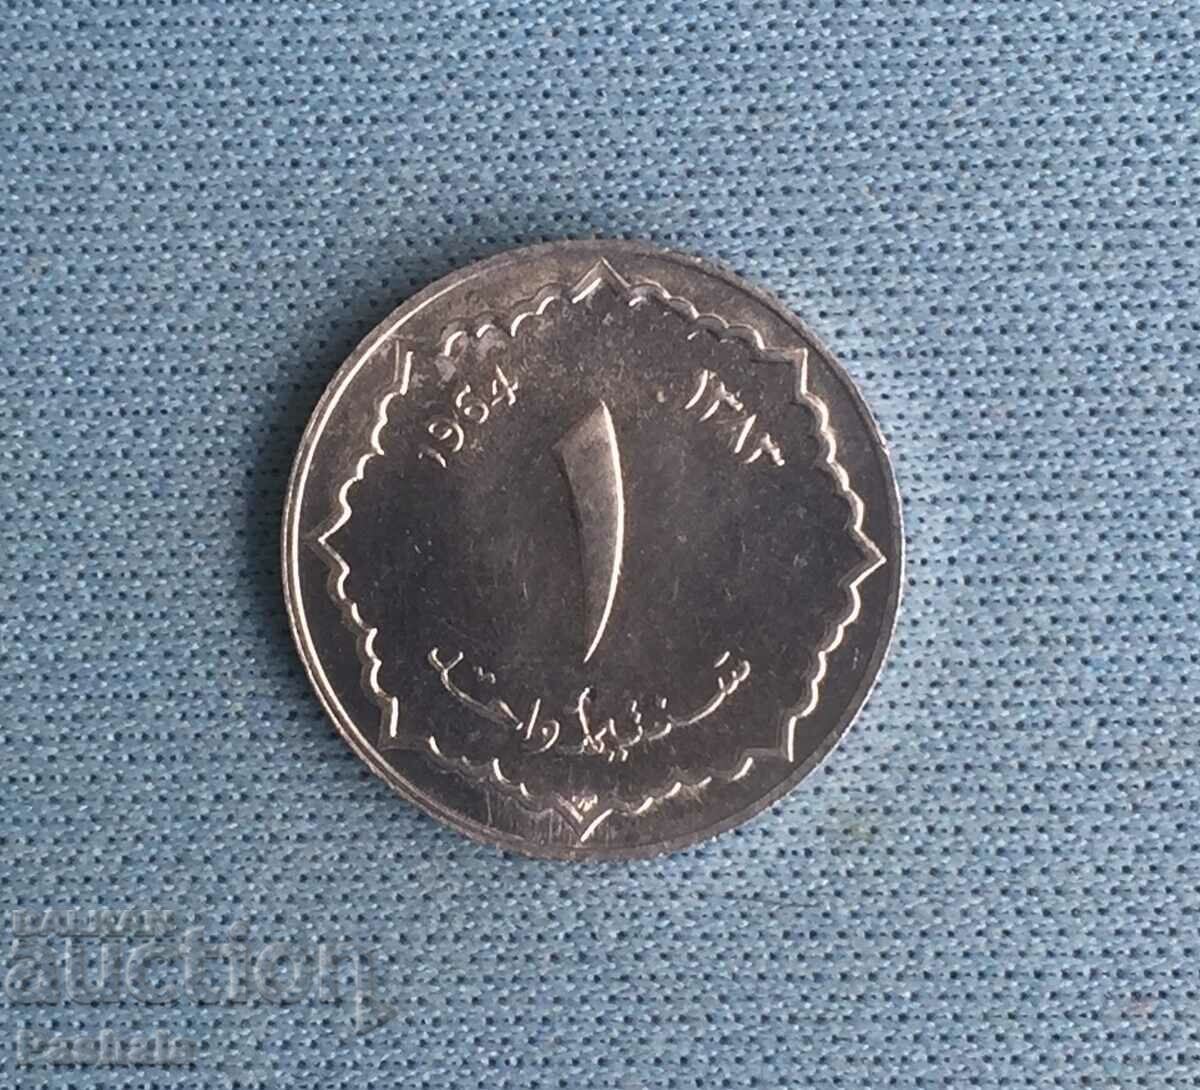 Algeria 1 cent 1964